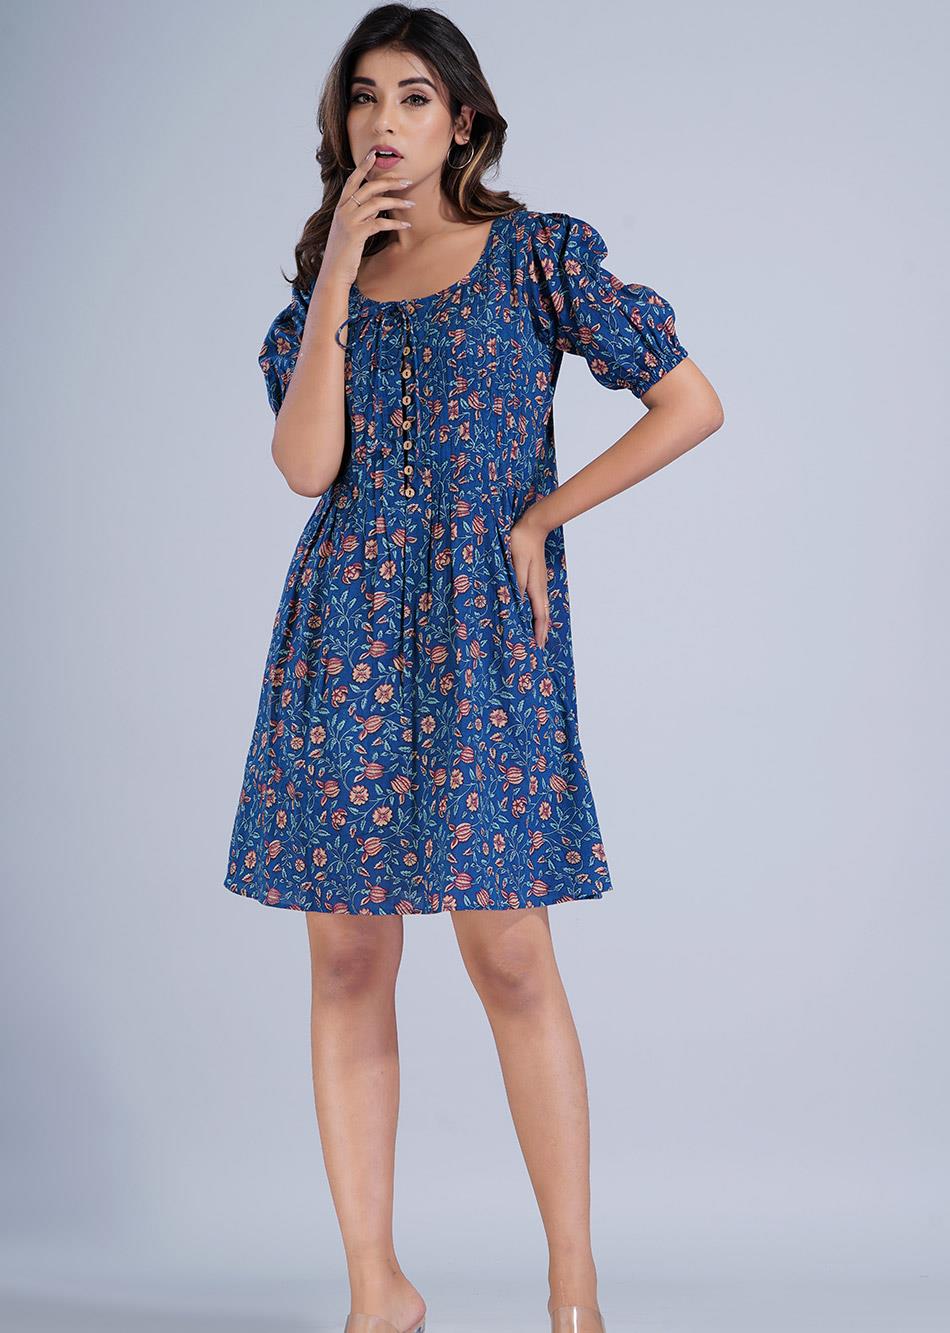 Blue Printed Short Dress By Jovi Fashion